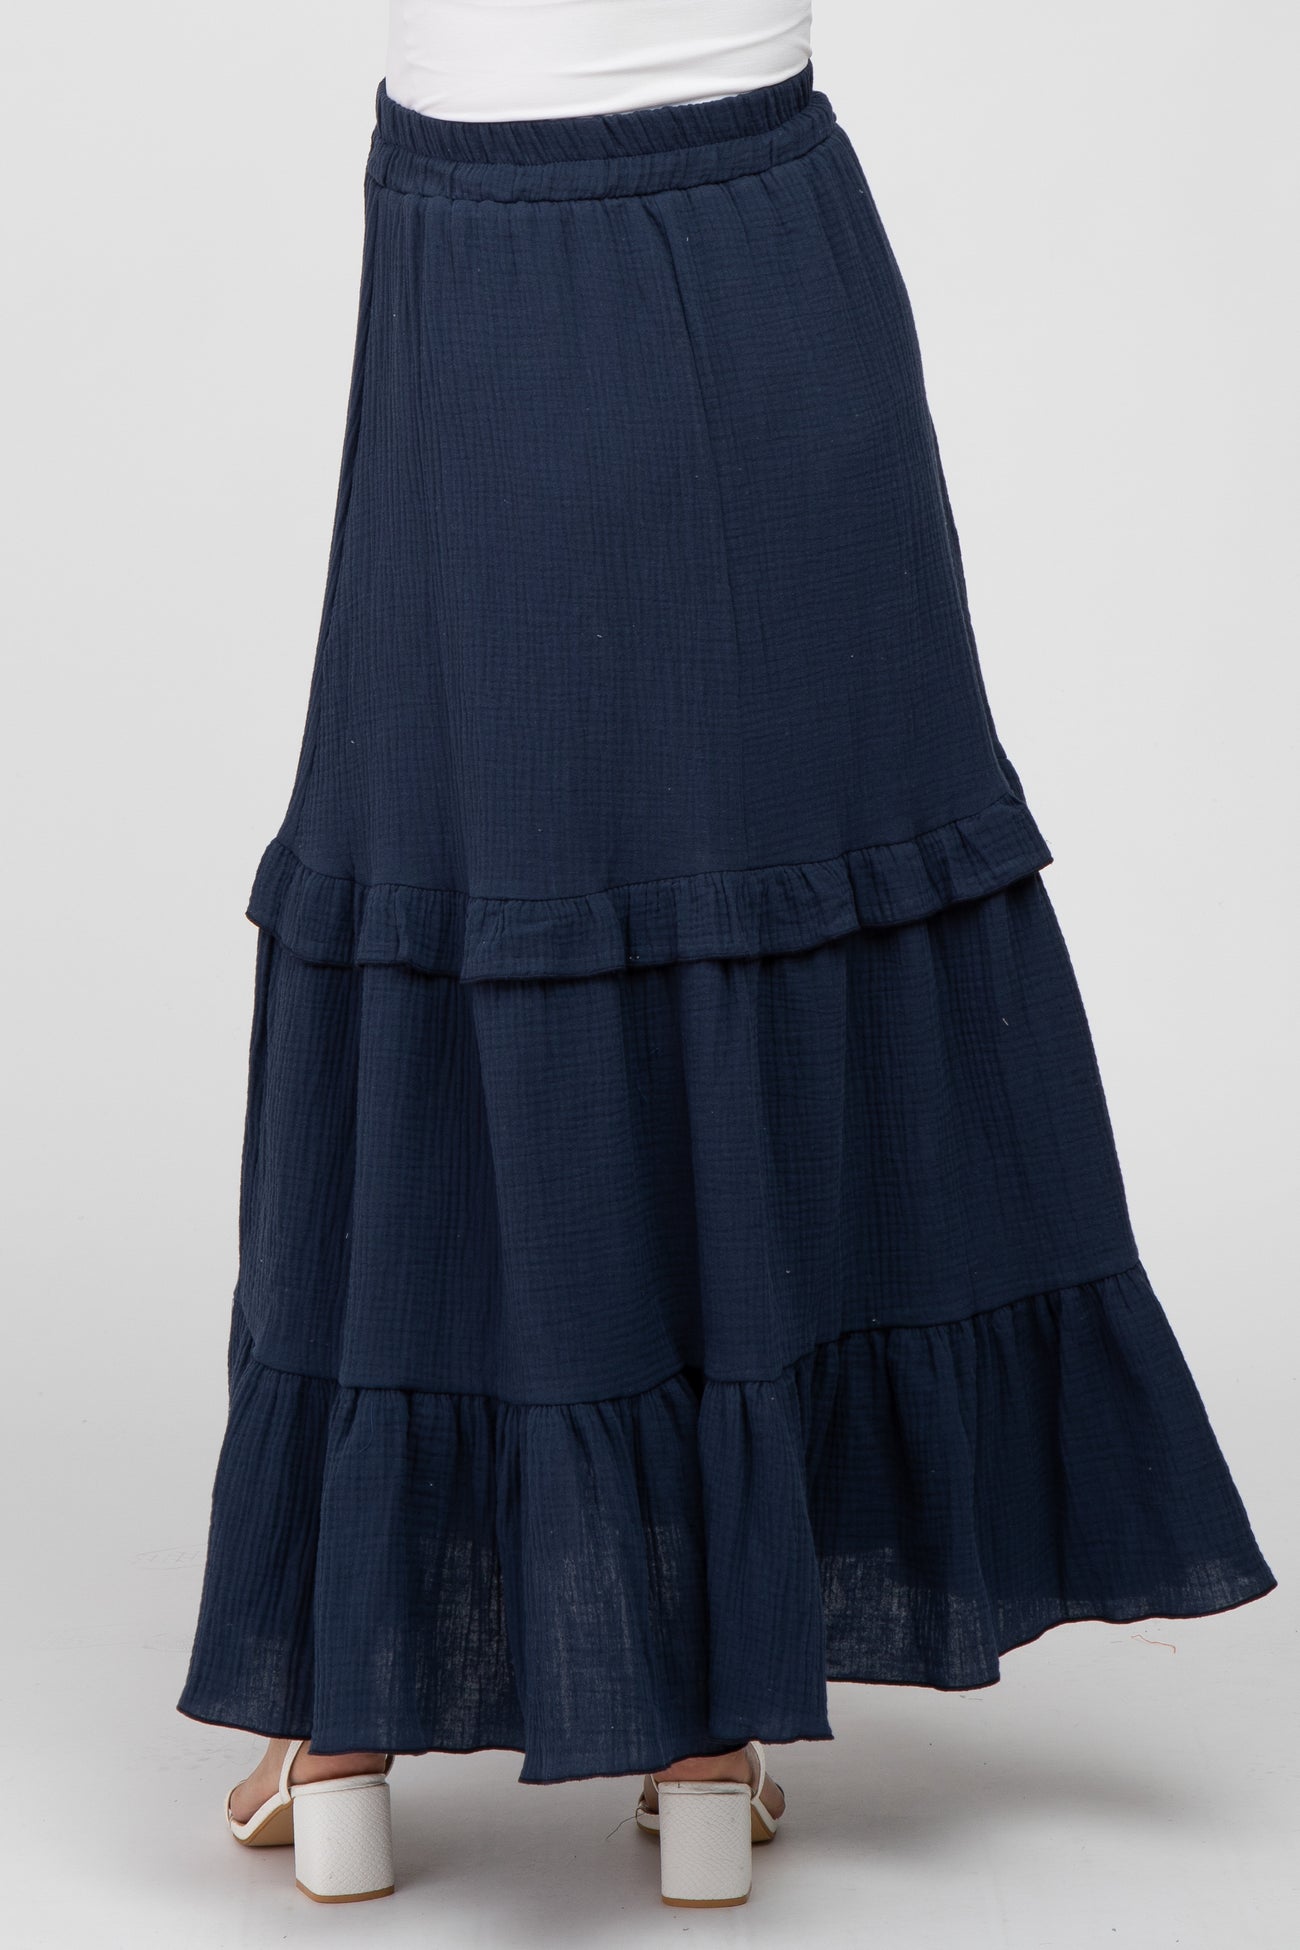 Navy Blue Cotton Gauze Ruffle Tiered Maternity Maxi Skirt– PinkBlush